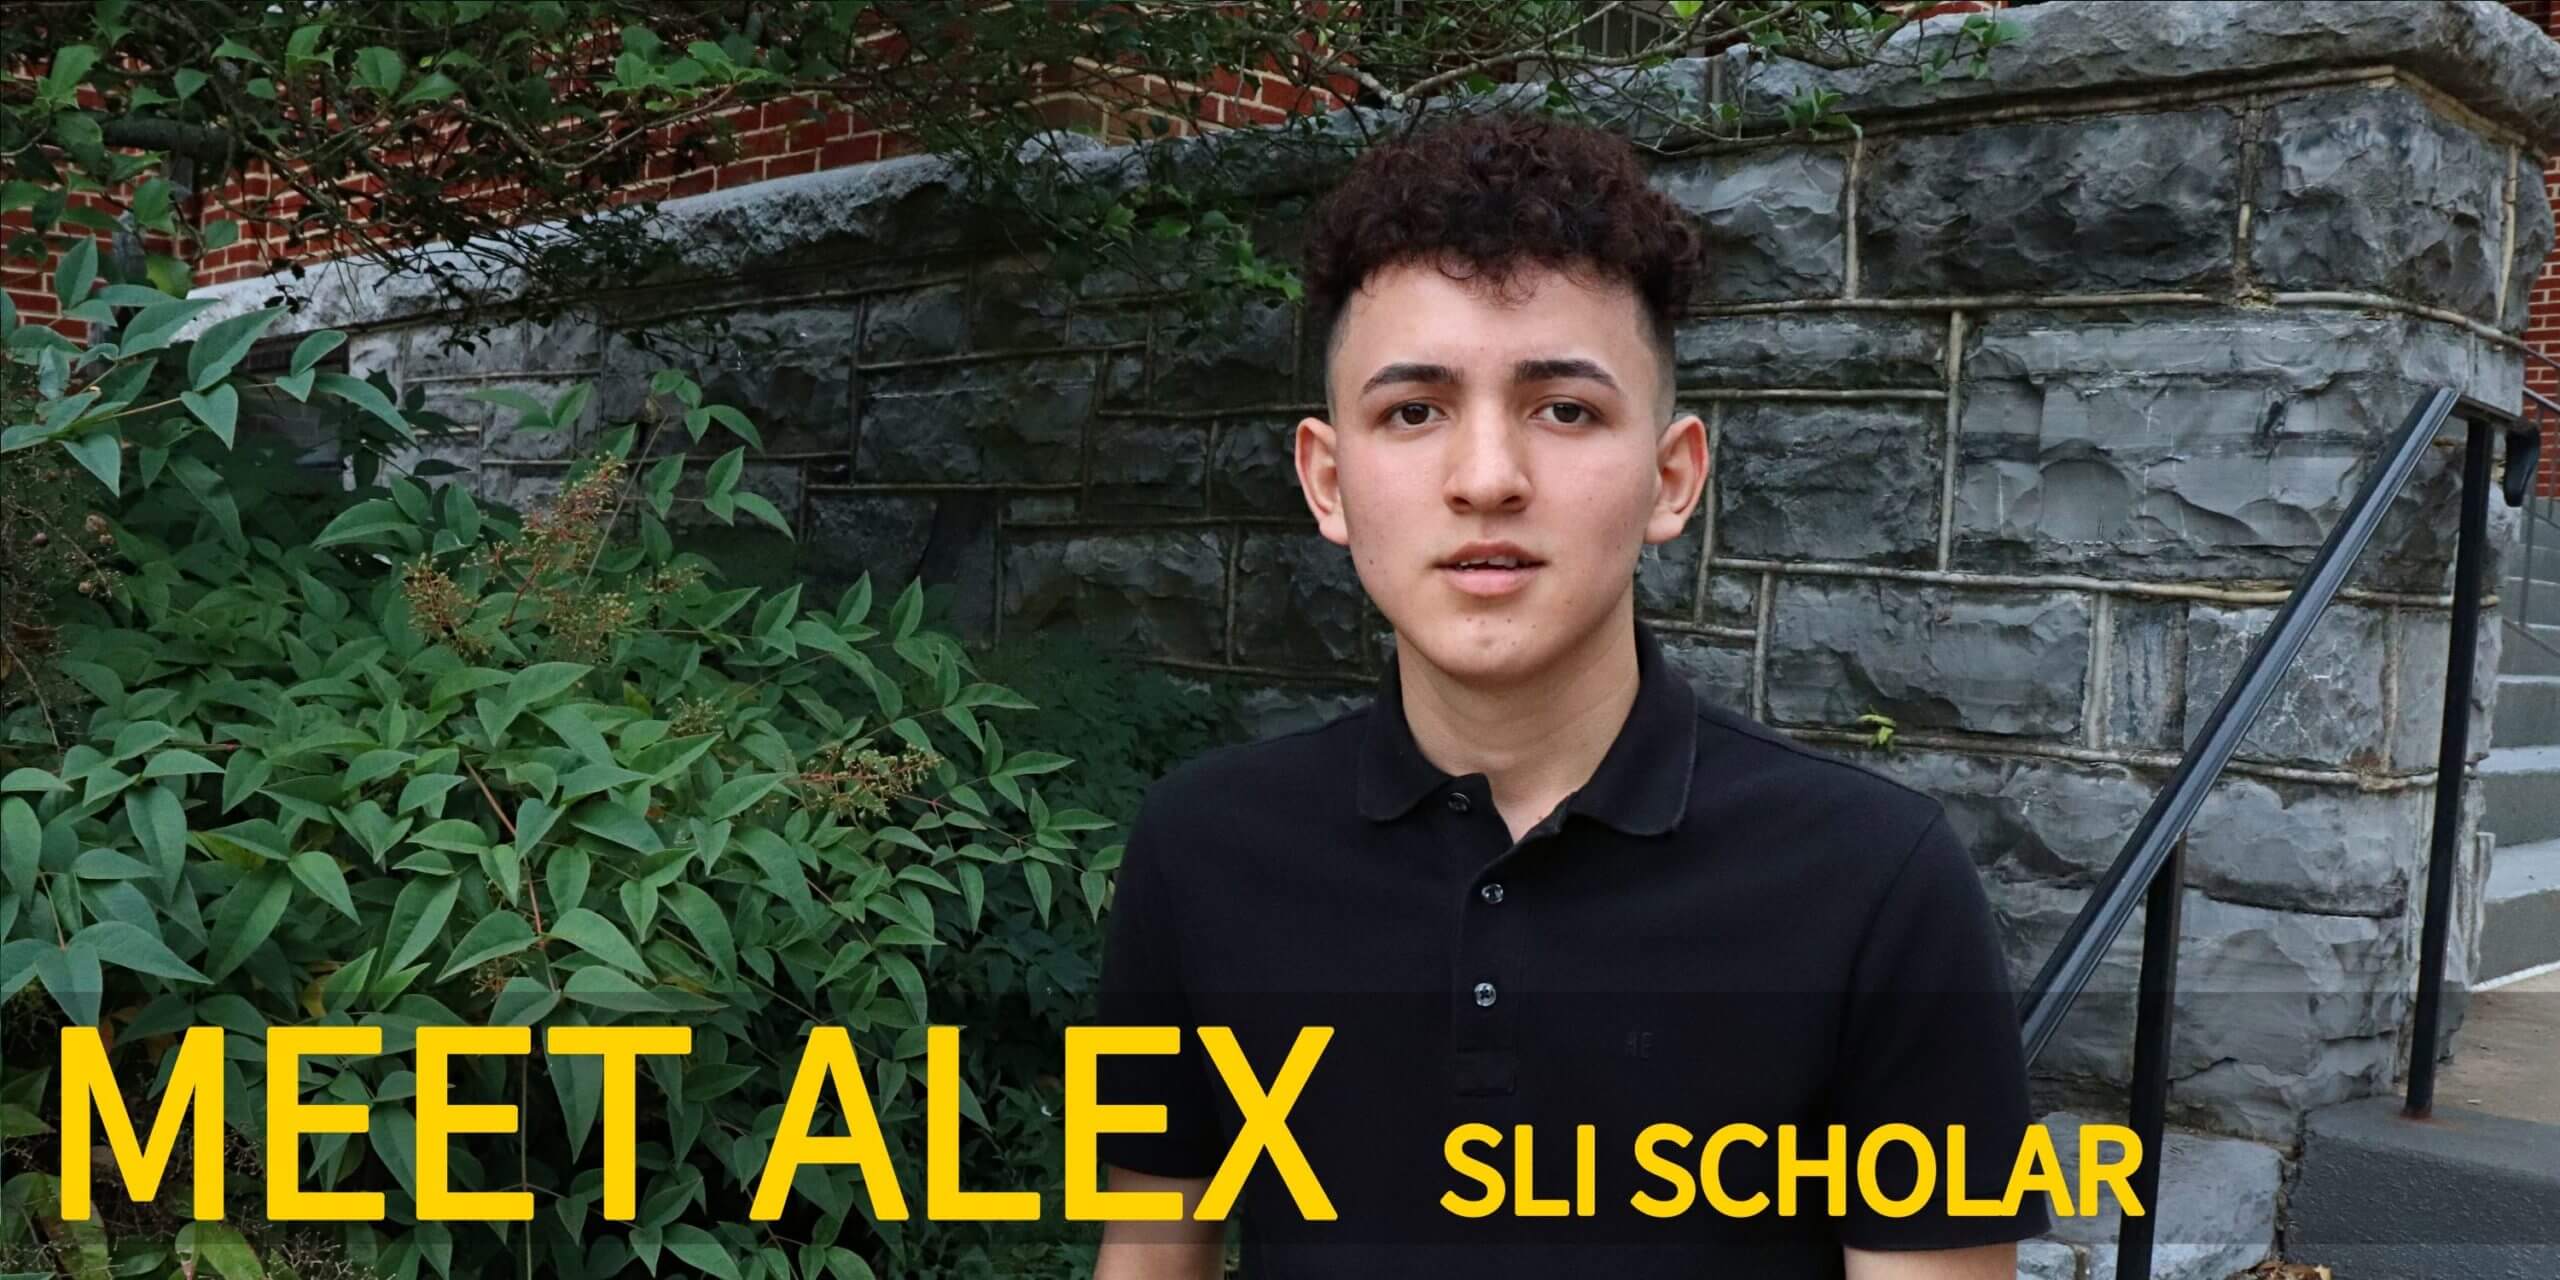 Meet Alex, SLI scholar